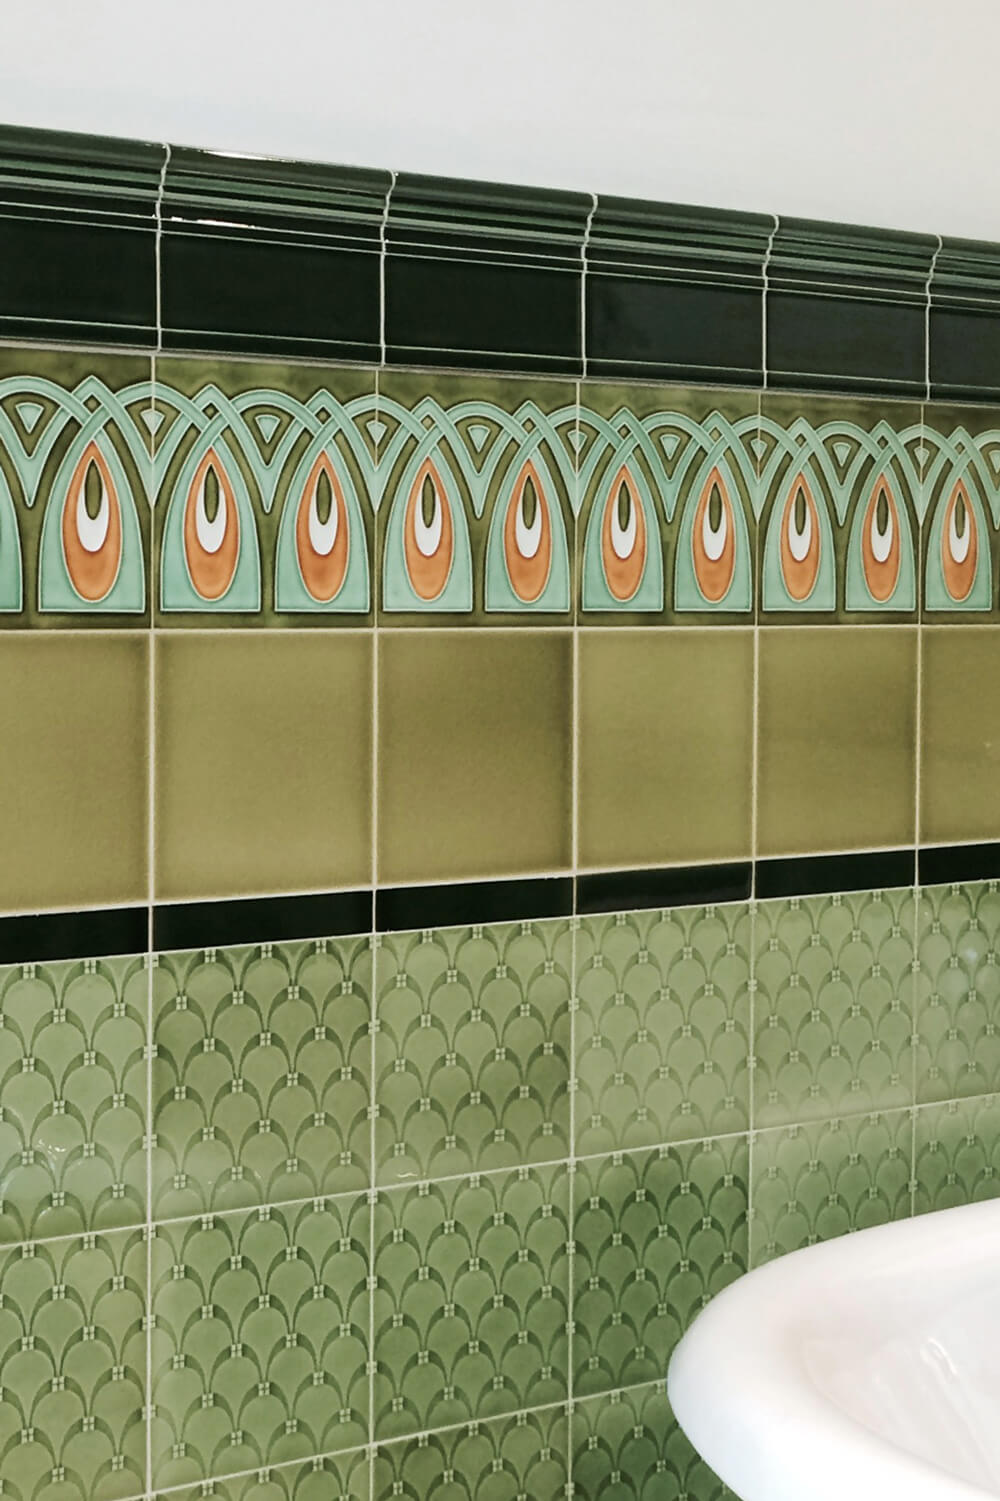 Bad mit Jugendstilfliesen mit geometrischen Ornament in grün, hellgrün und orange, Rapport, Entwurf: Grohner Wandplattenfabrik 1900